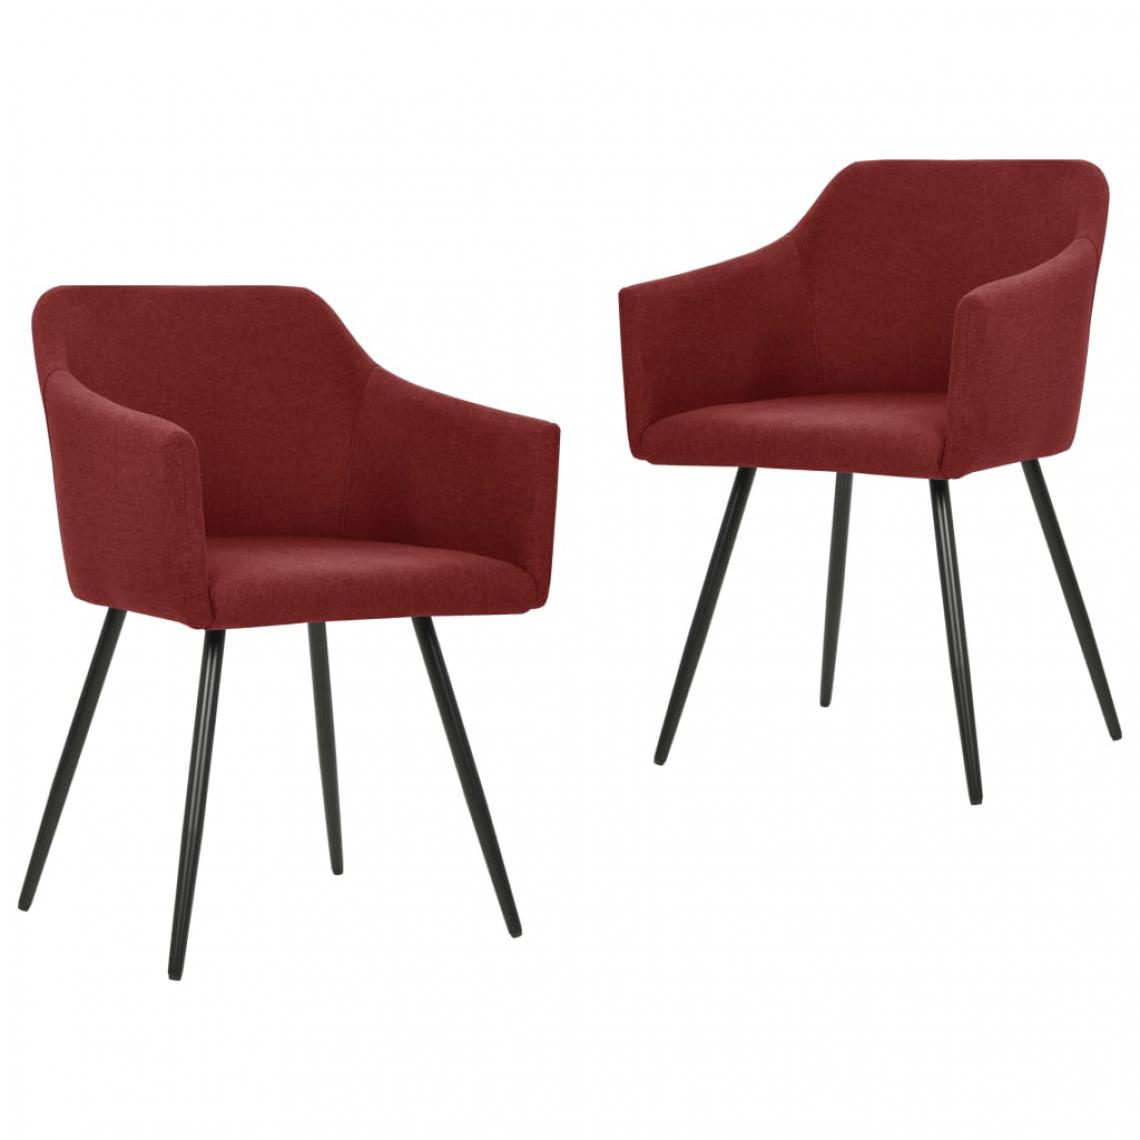 Icaverne - Inedit Fauteuils et chaises collection Bridgetown Chaises de salle à manger 2 pcs Rouge bordeaux Tissu - Chaises